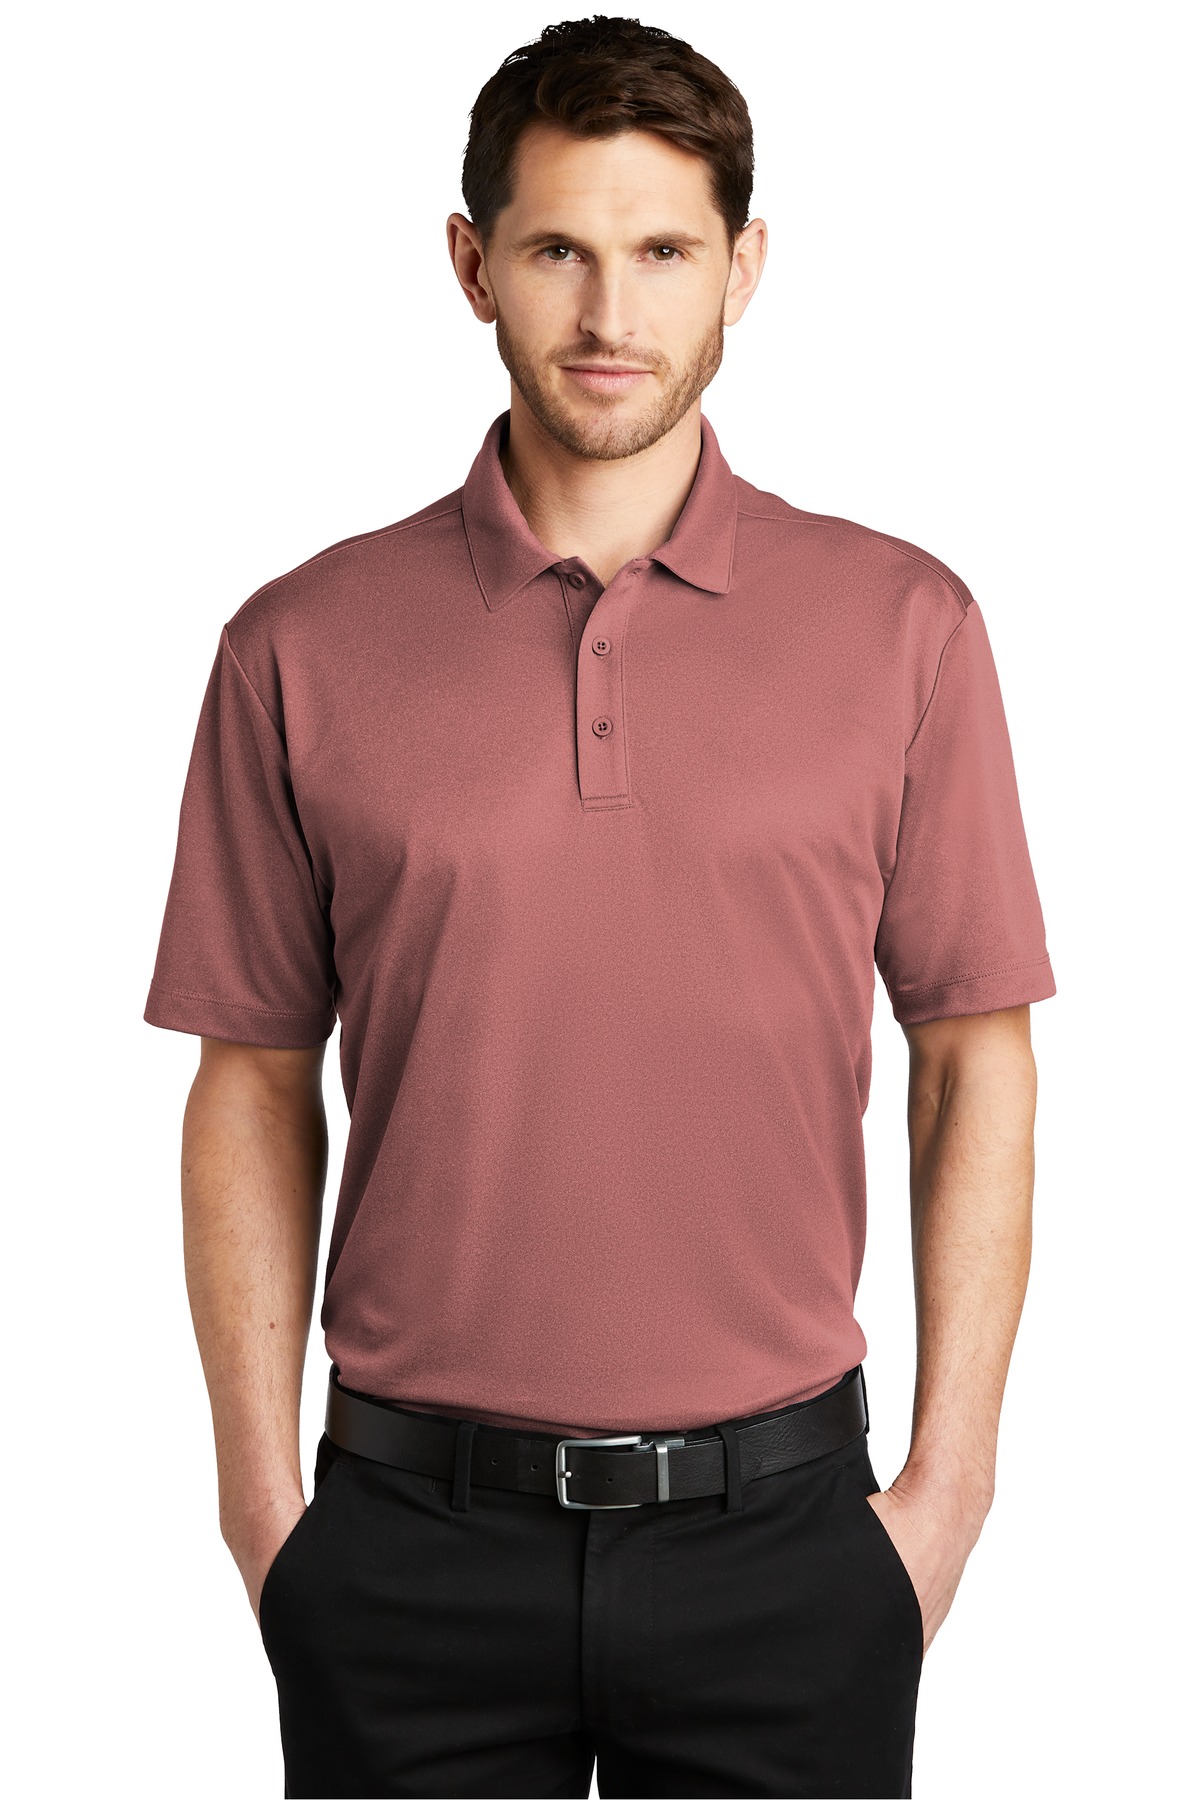 Garnet Polo Shirt For Men